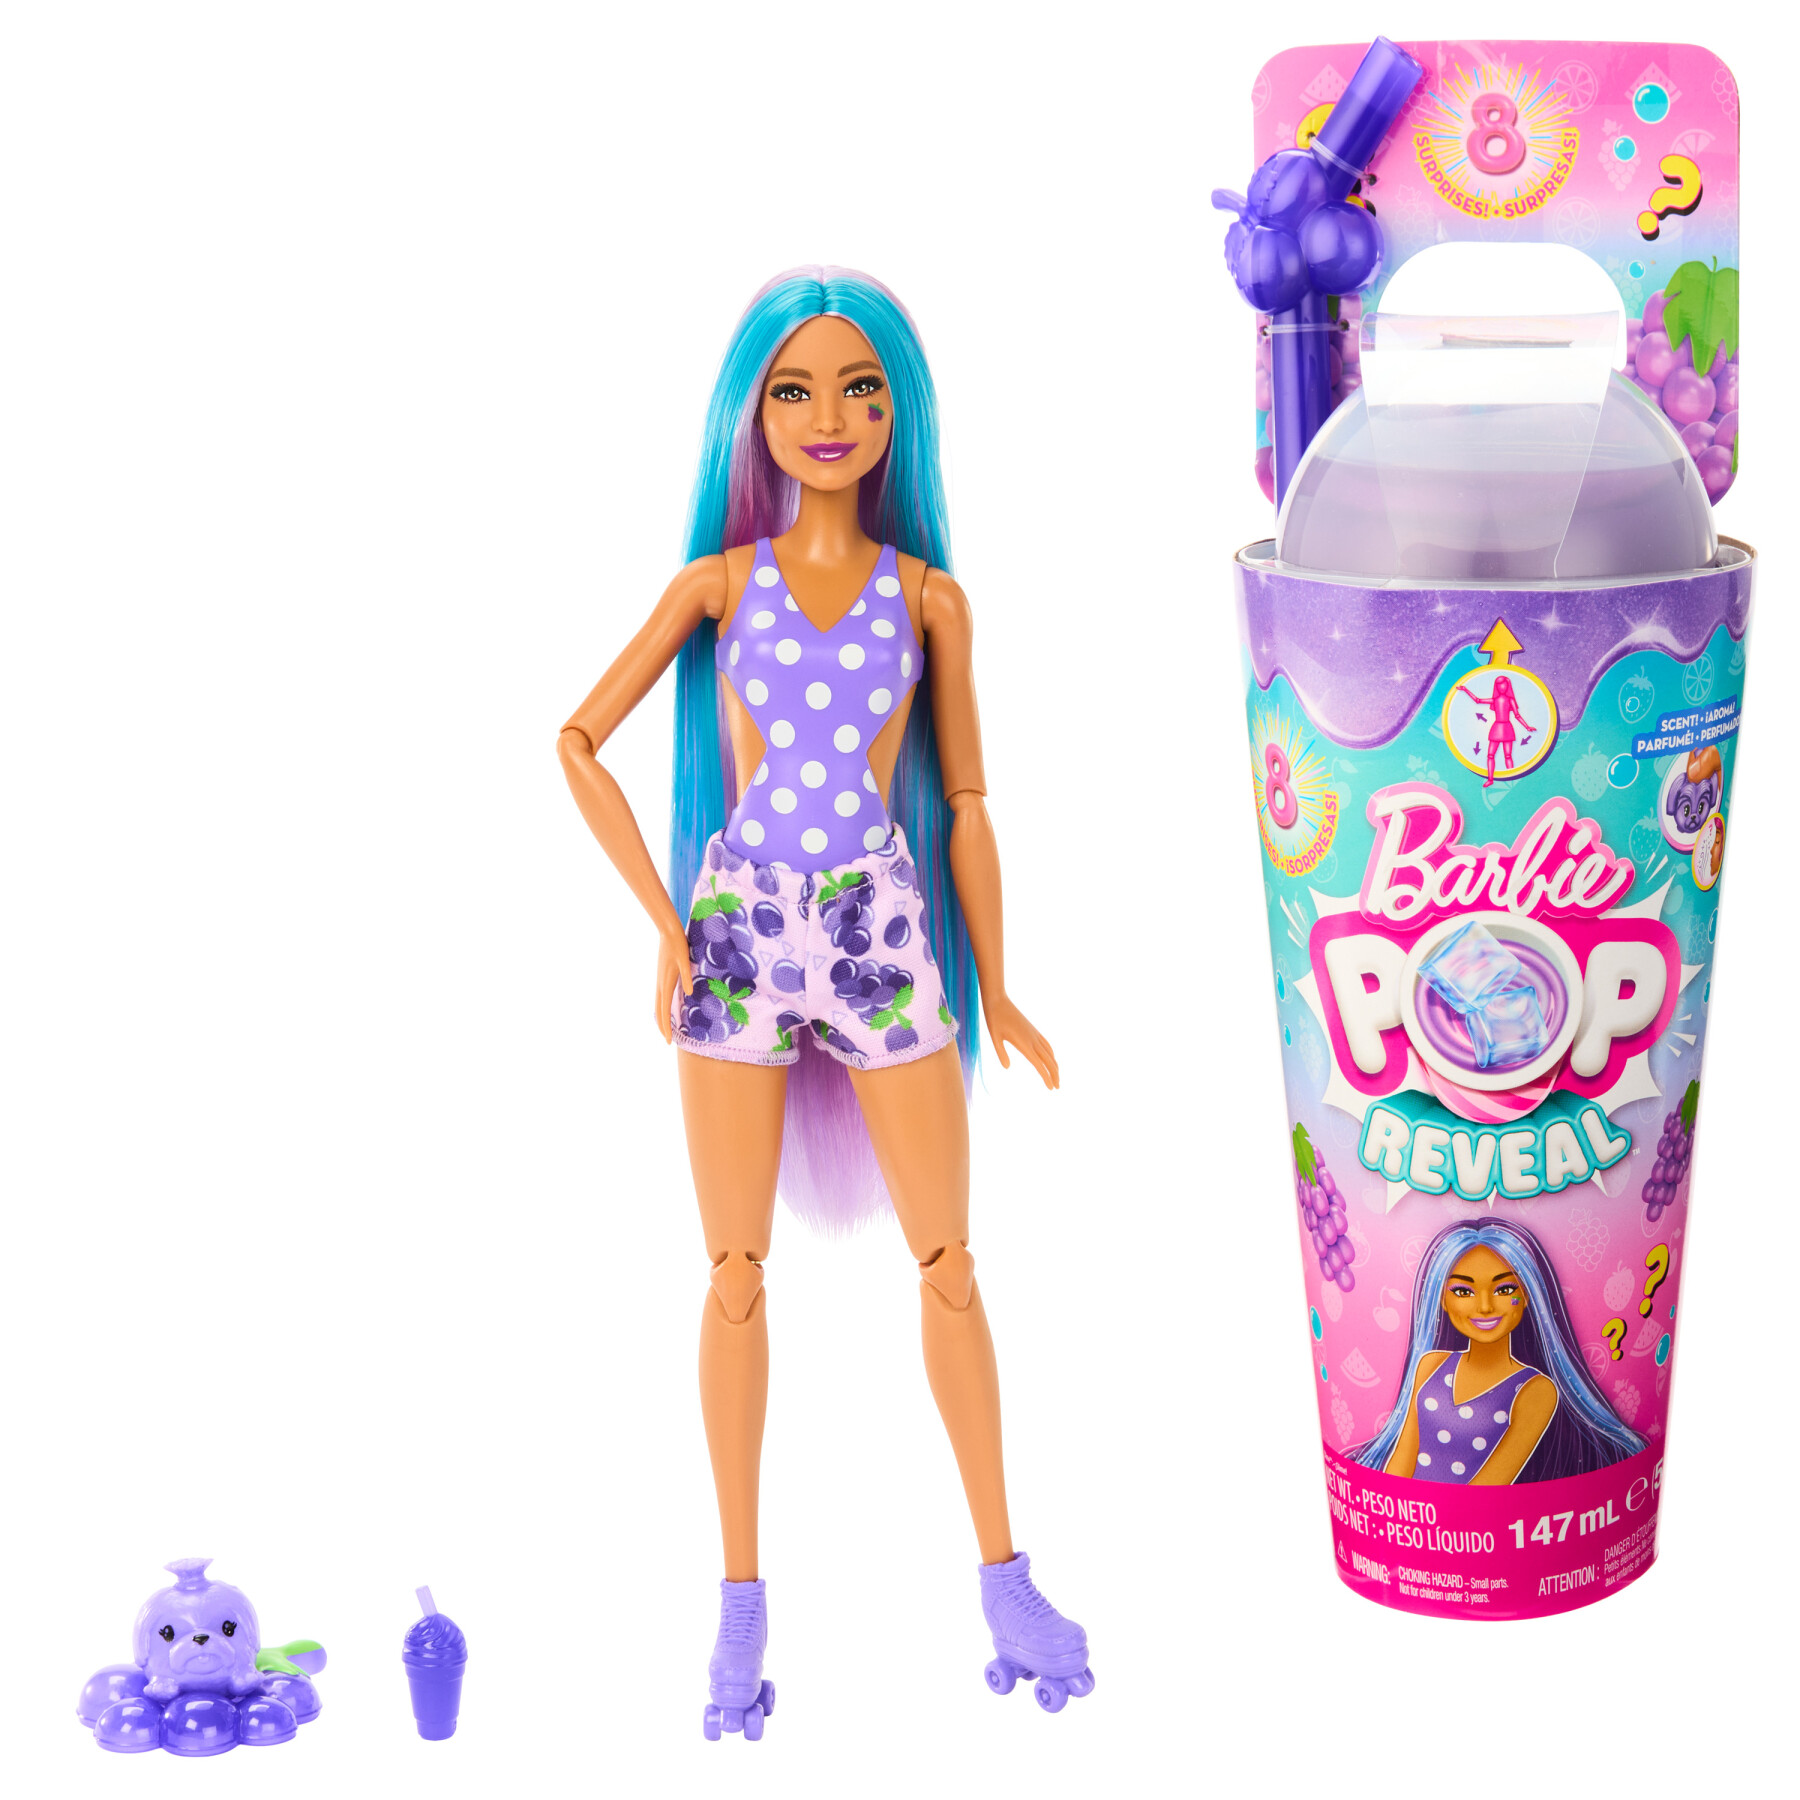 Barbie Cutie Reveal Bambola HKP99 con costume da Tigre - OFFERTA !